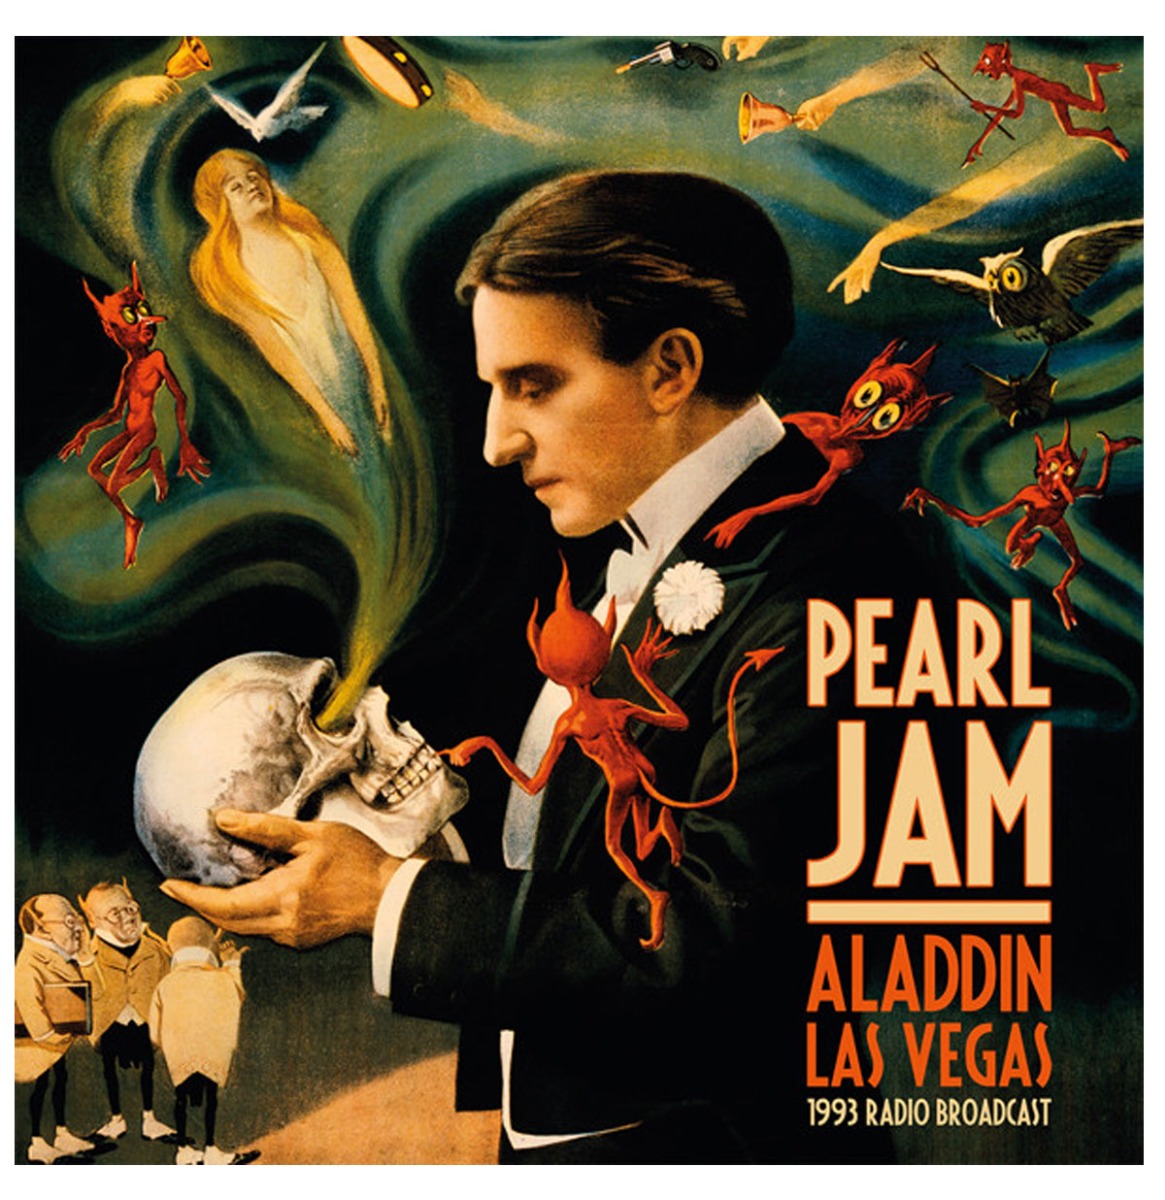 Pearl Jam - Aladdin Las Vegas 1993 Radio Broadcast 2-LP